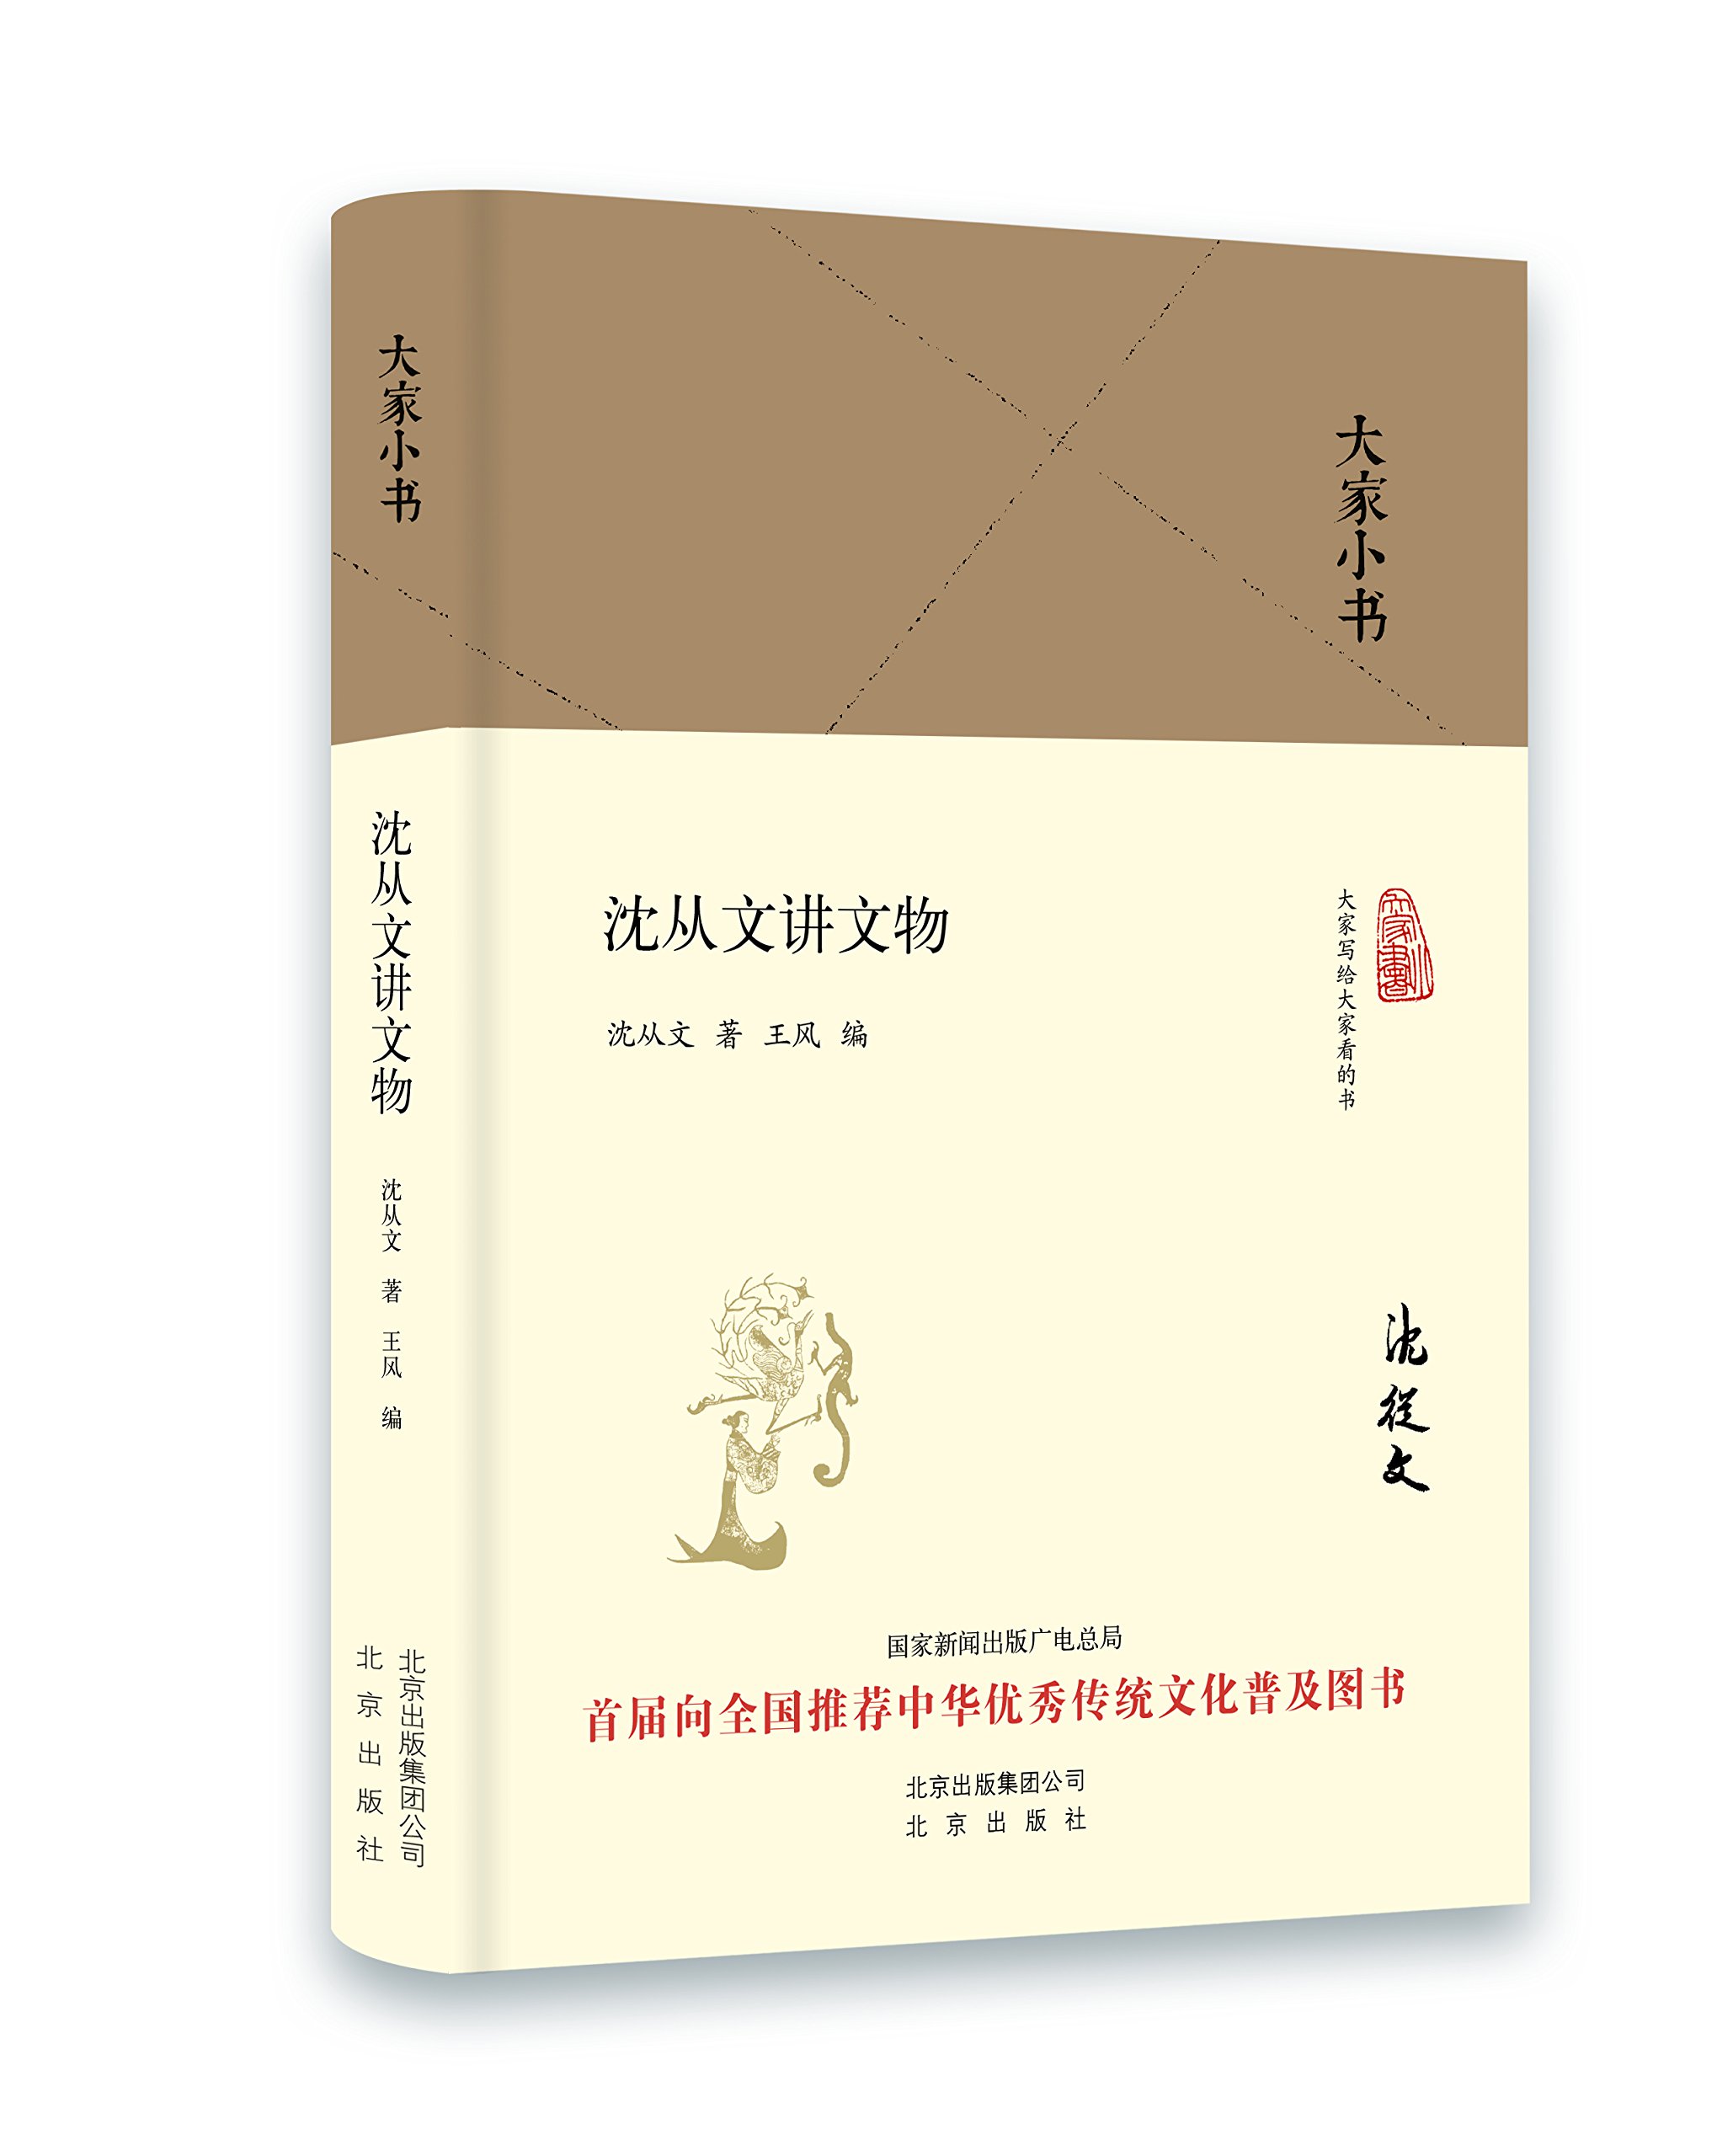 大家小书:沈从文讲文物 精装 沈从文 著 北京出版社 正版书籍